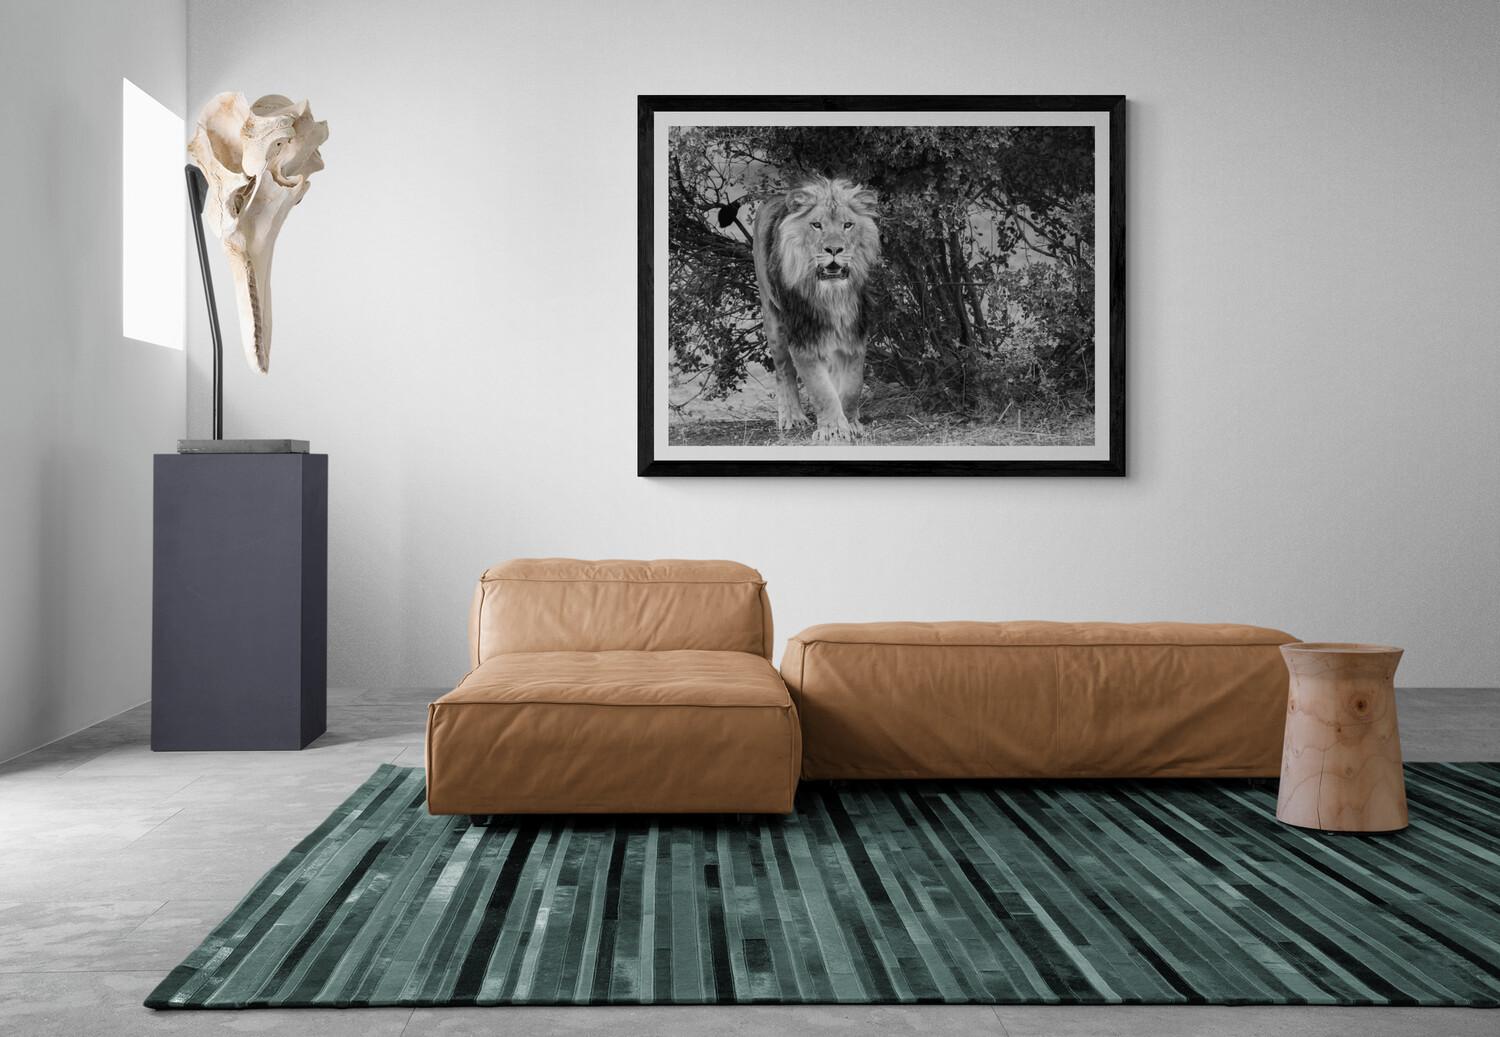 Il s'agit d'une photographie contemporaine d'un lion d'Afrique prise par Shane Russeck.
36x48  
Non signé
Imprimé sur du papier lustré d'archivage.  

Shane Russeck s'est forgé une réputation en capturant les paysages, les cultures et les animaux en